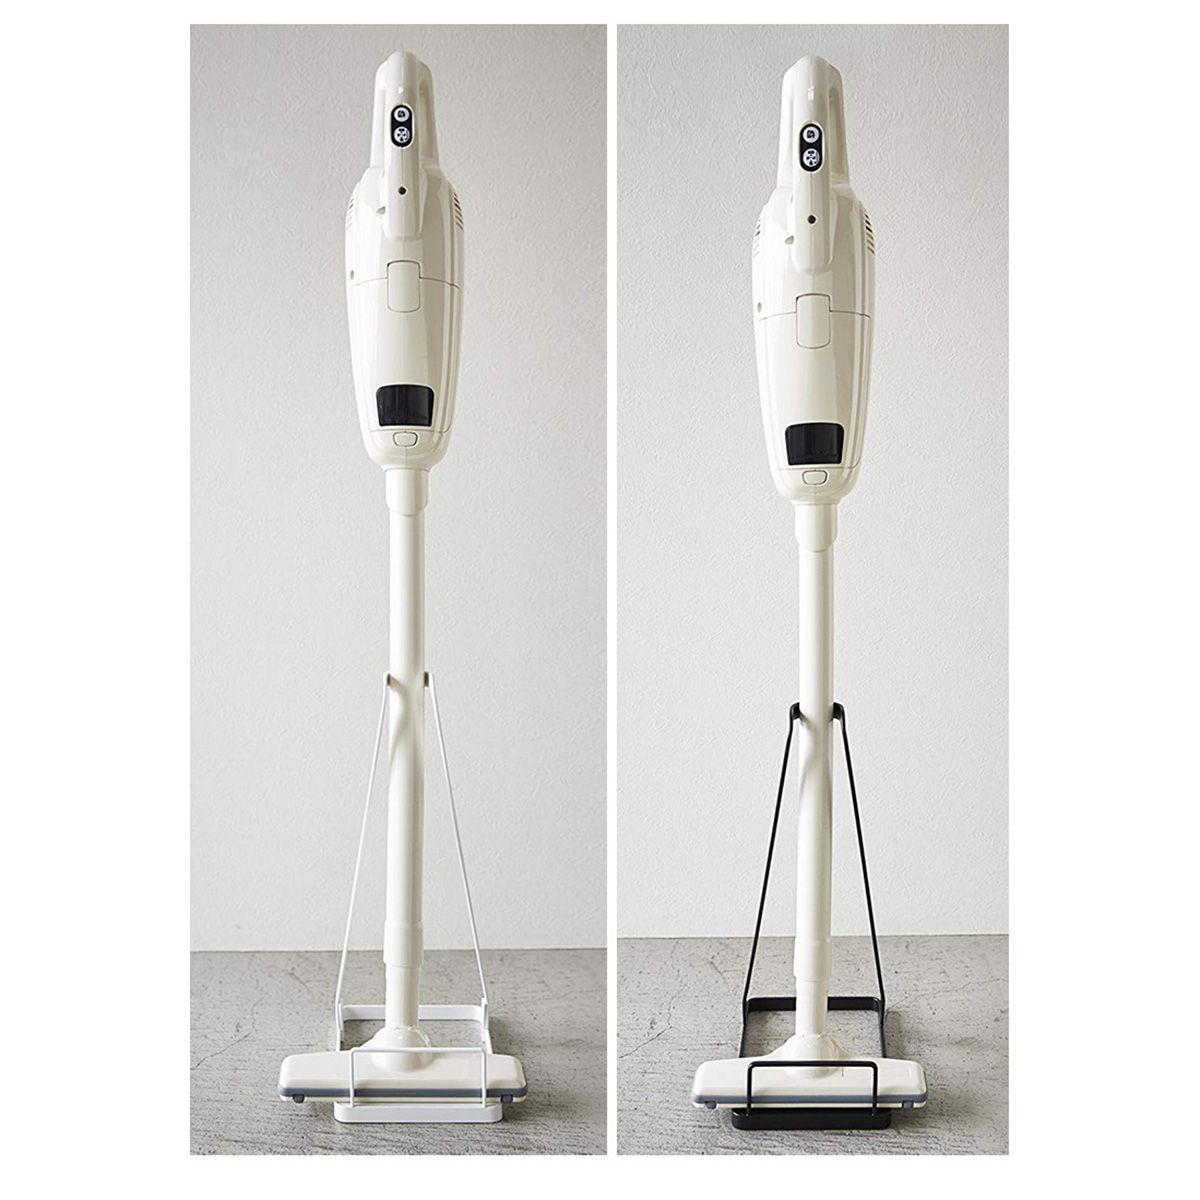 Vacuum-Cleaner-Stand-Holder-Bracket-For-Dyson-V6-V7-V8-V10-Generic-Stick-Cleaner-1476198